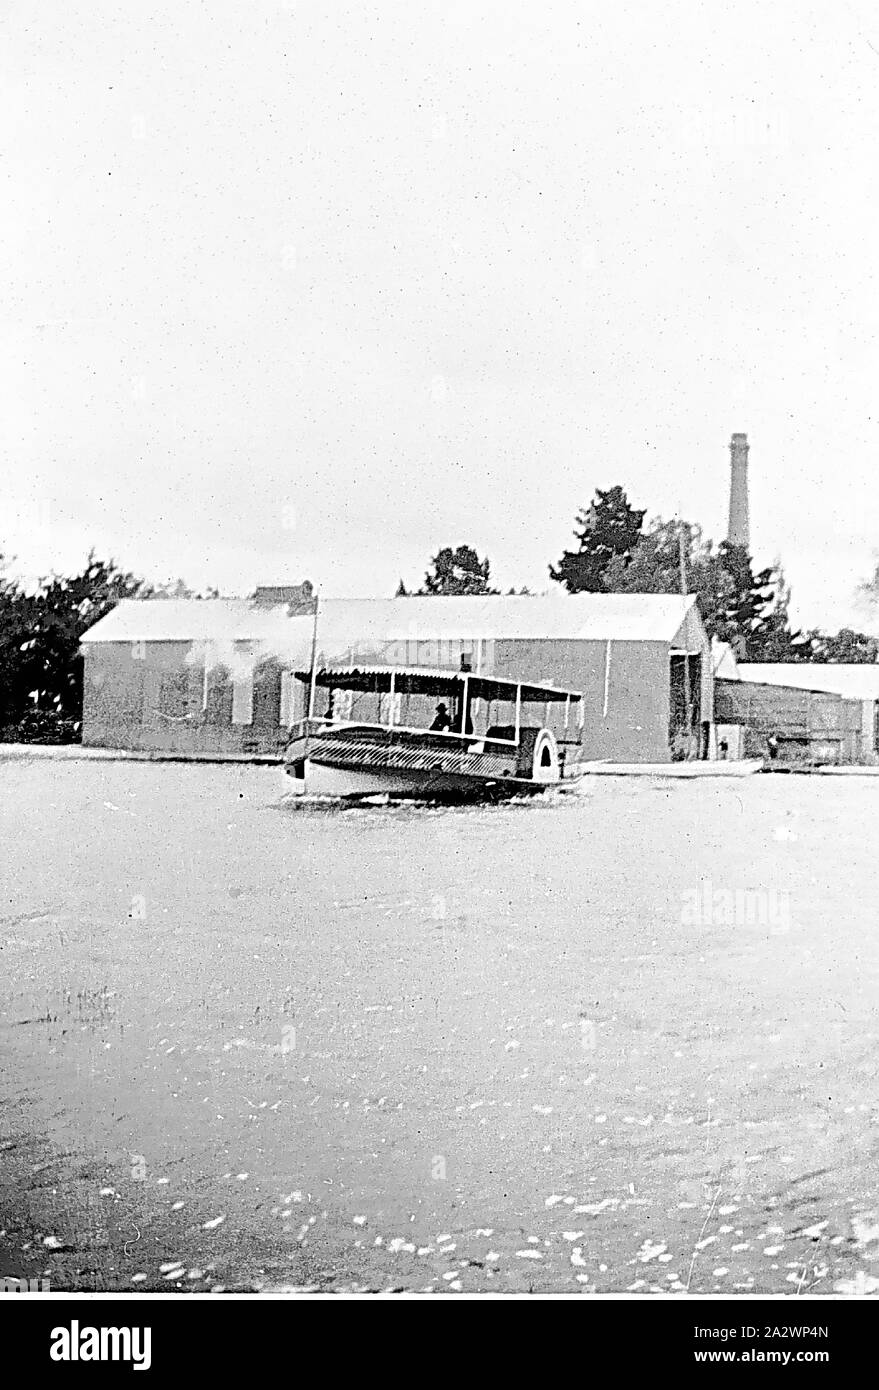 Negativo - Ballarat, Victoria, en 1934, la ciudad de oro paddleboat sobre su último viaje como un barco a vapor. En la tierra, el Club Náutico de Ballarat Foto de stock